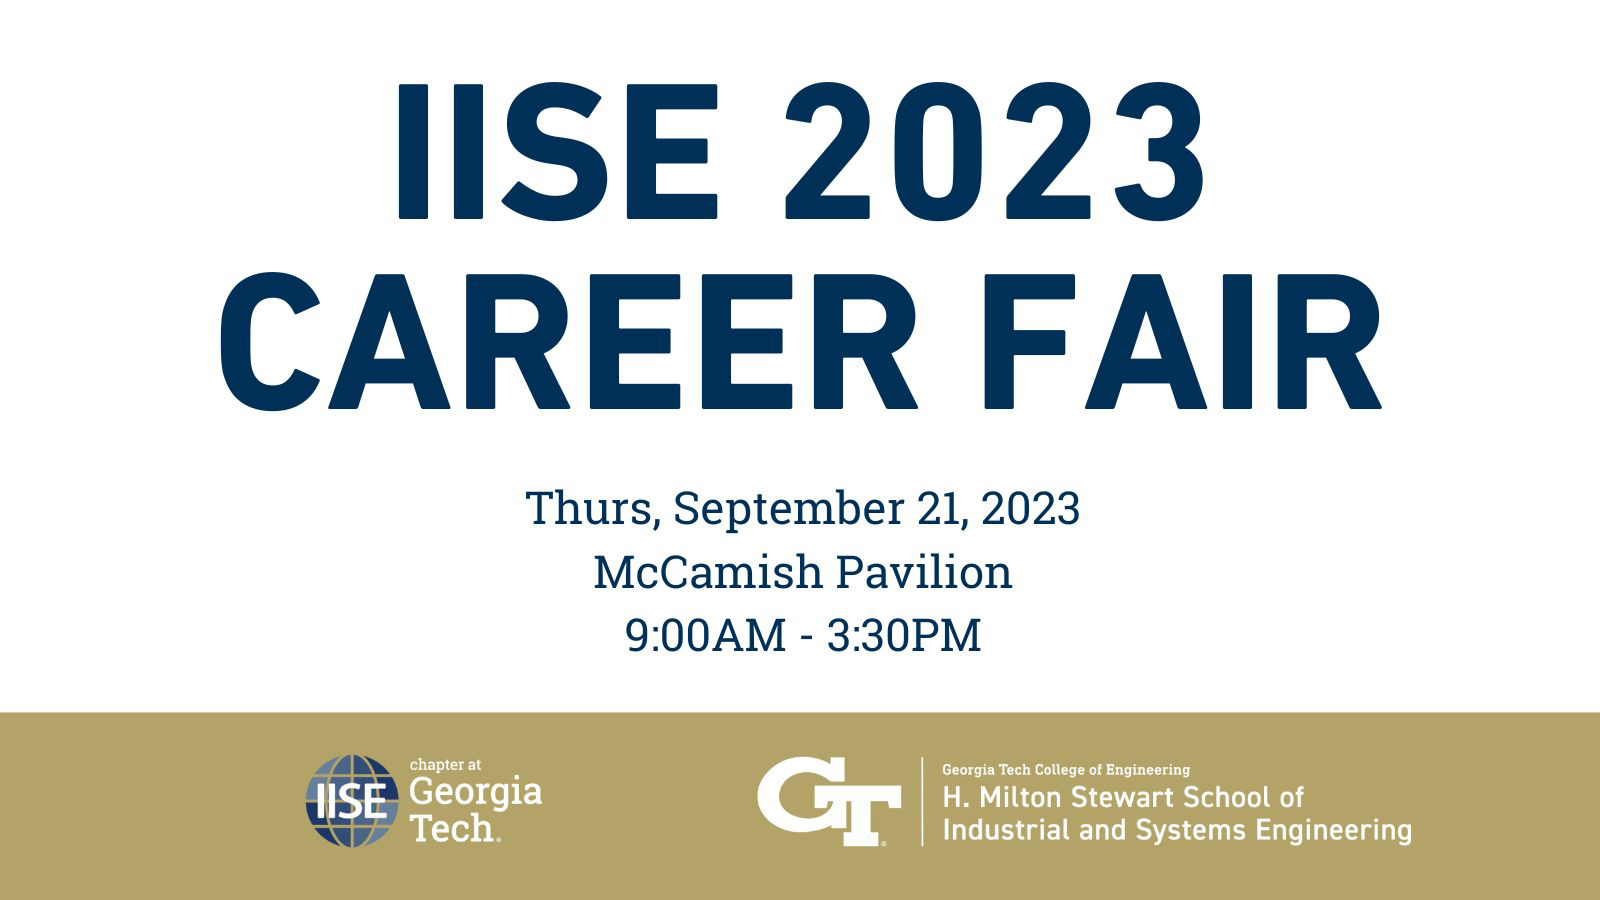 IISE 2023 Career Fair